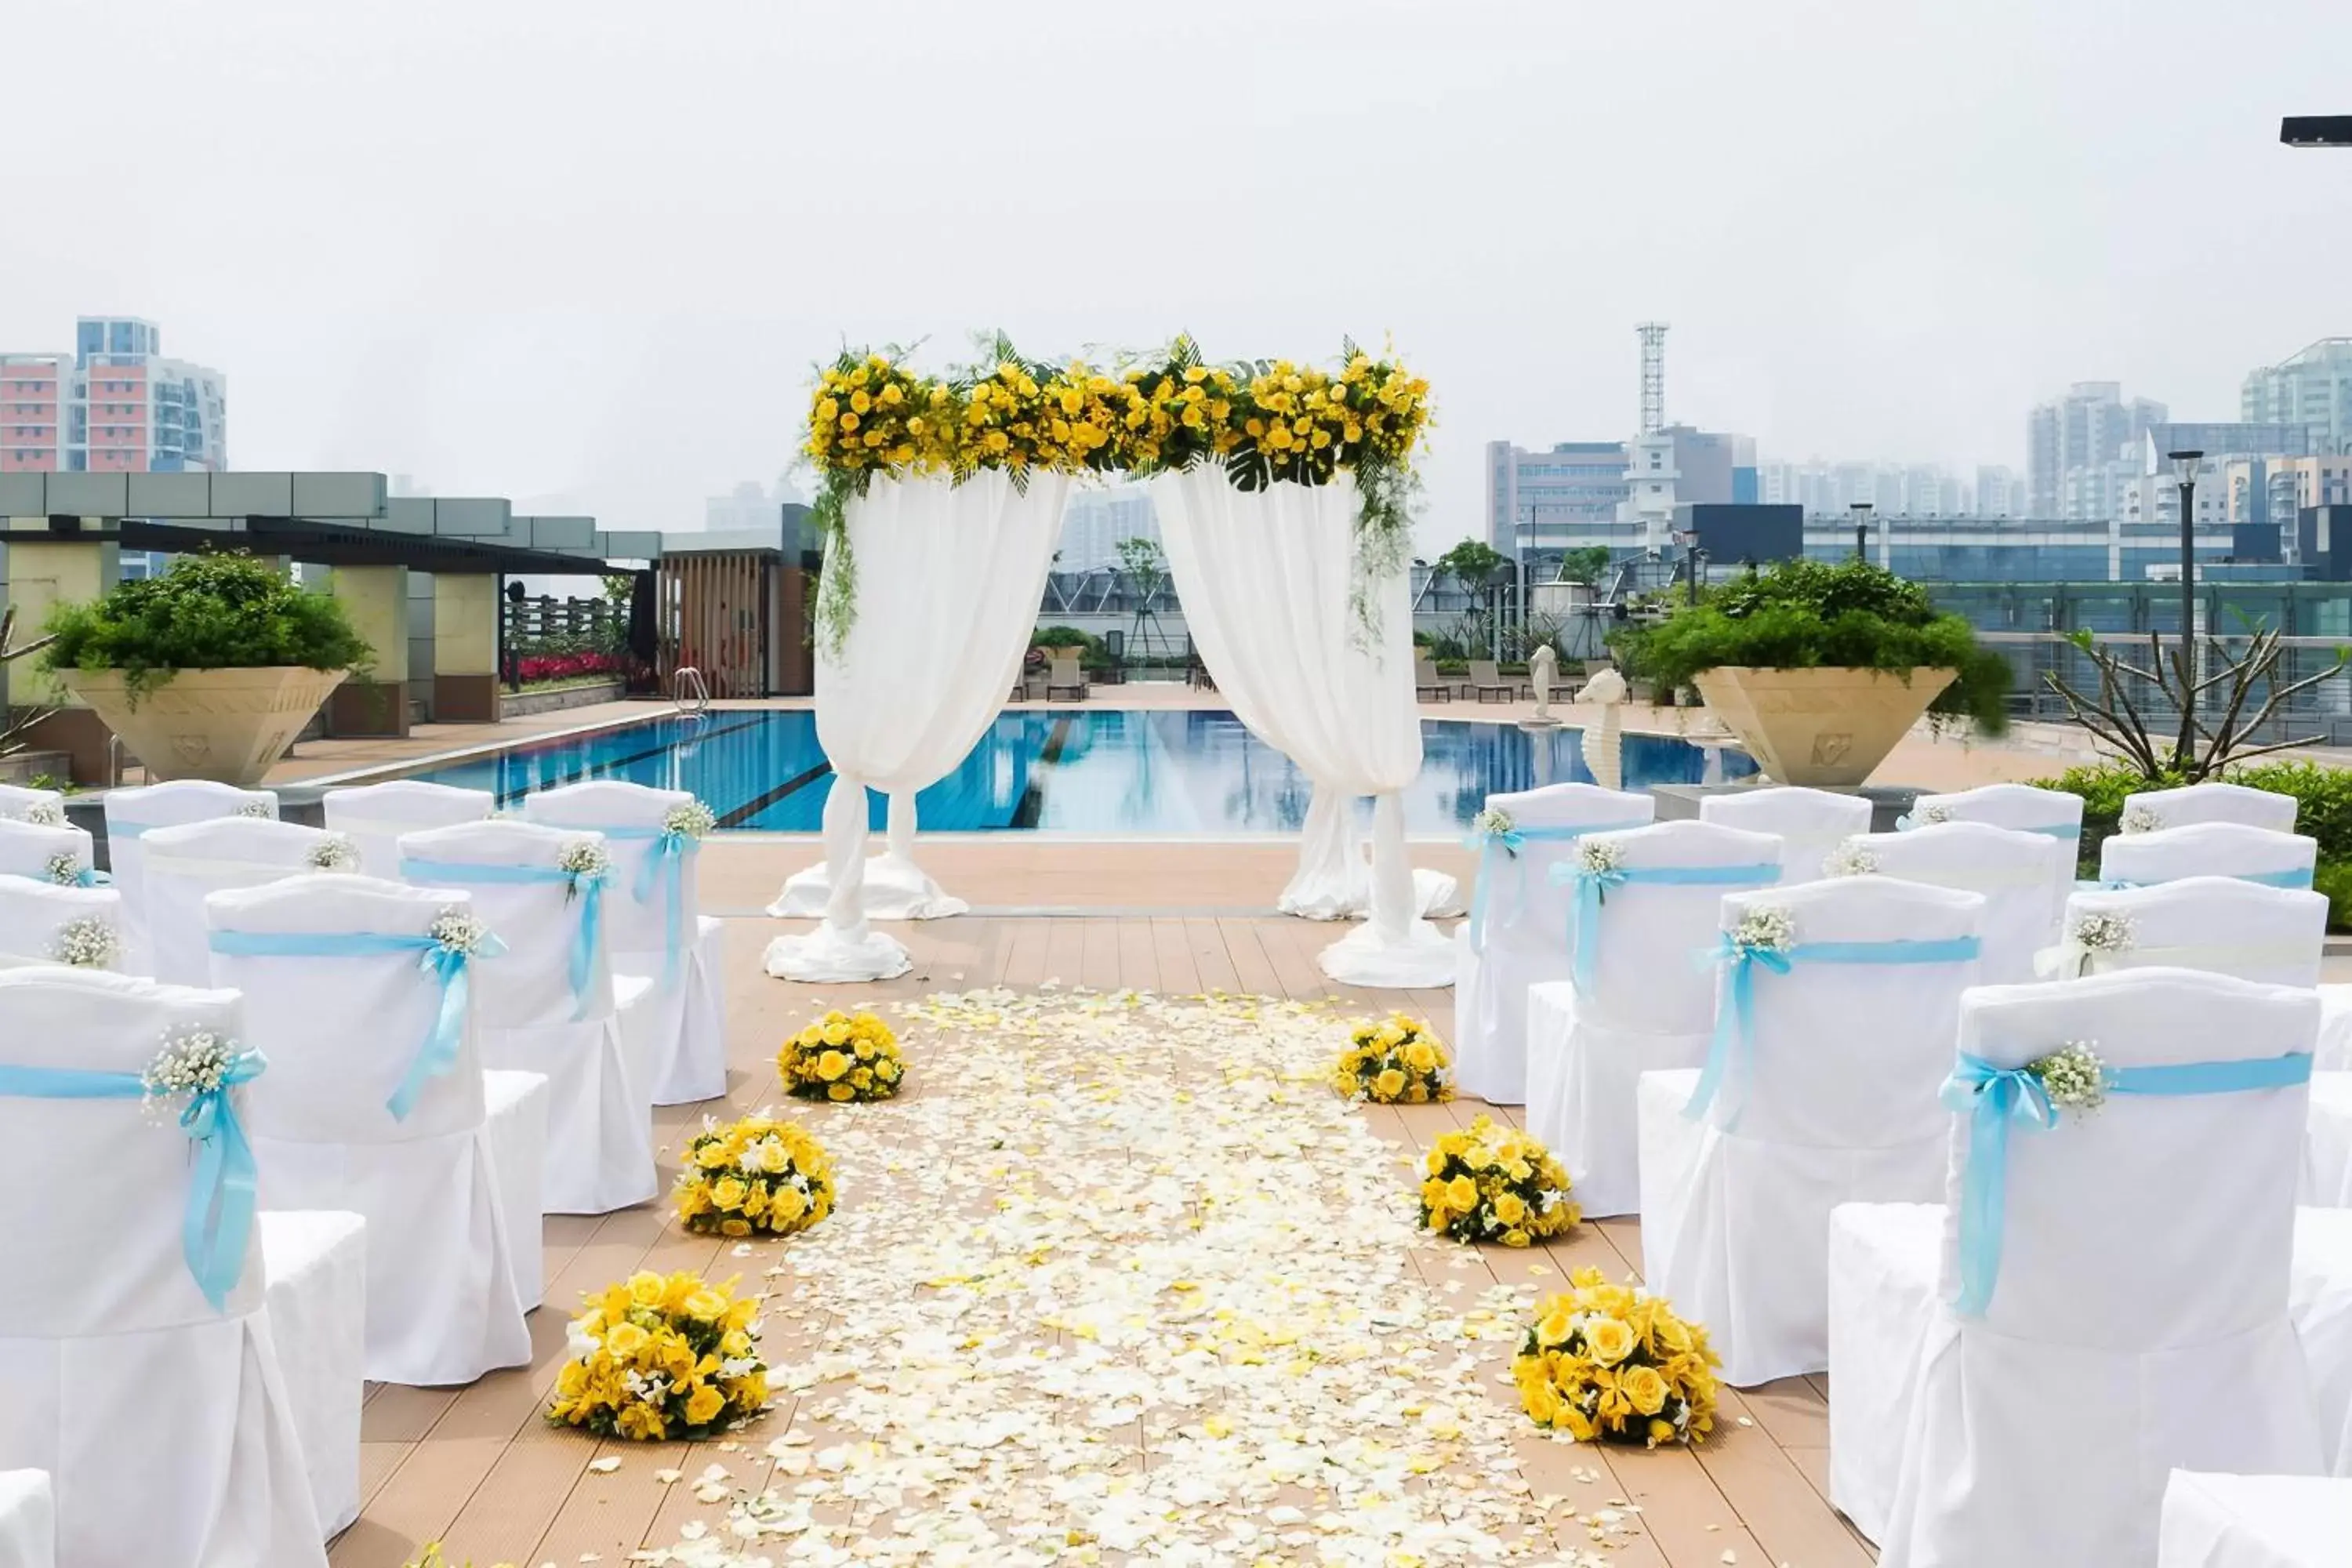 Swimming pool, Banquet Facilities in Sheraton Guangzhou Hotel